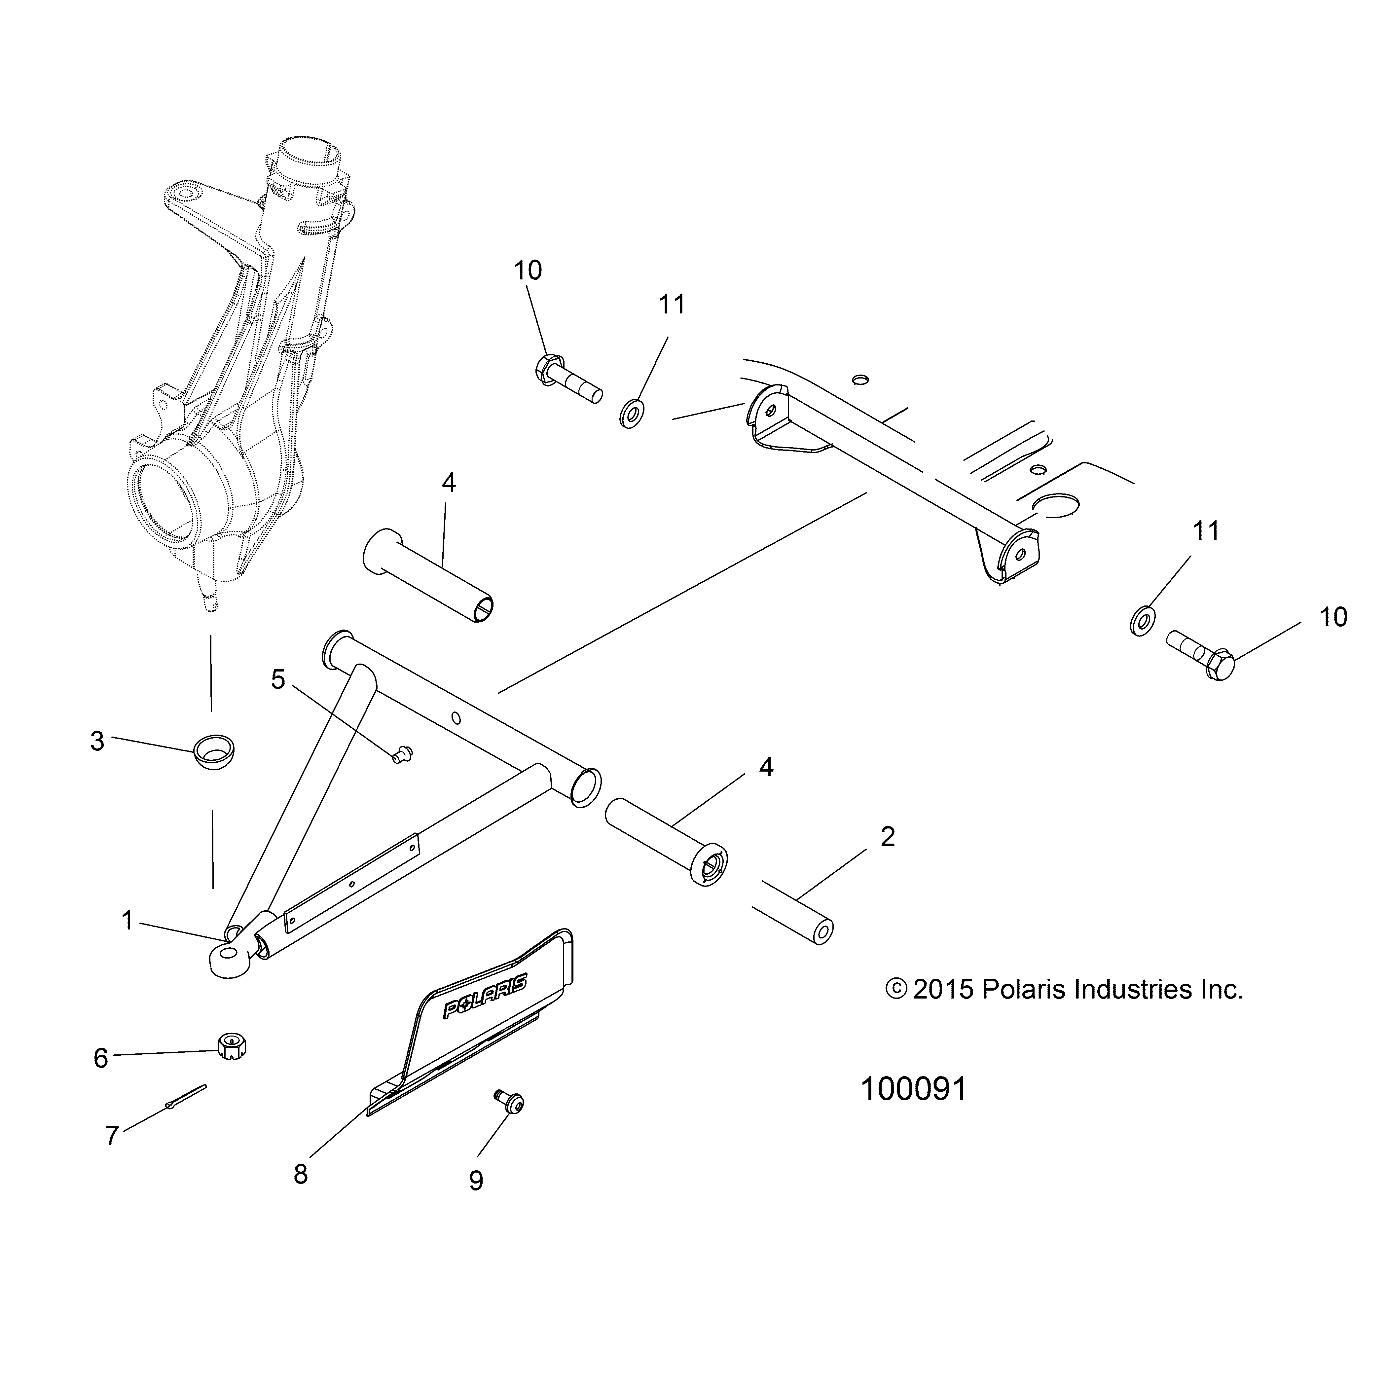 Foto diagrama Polaris que contem a peça 1542161-458